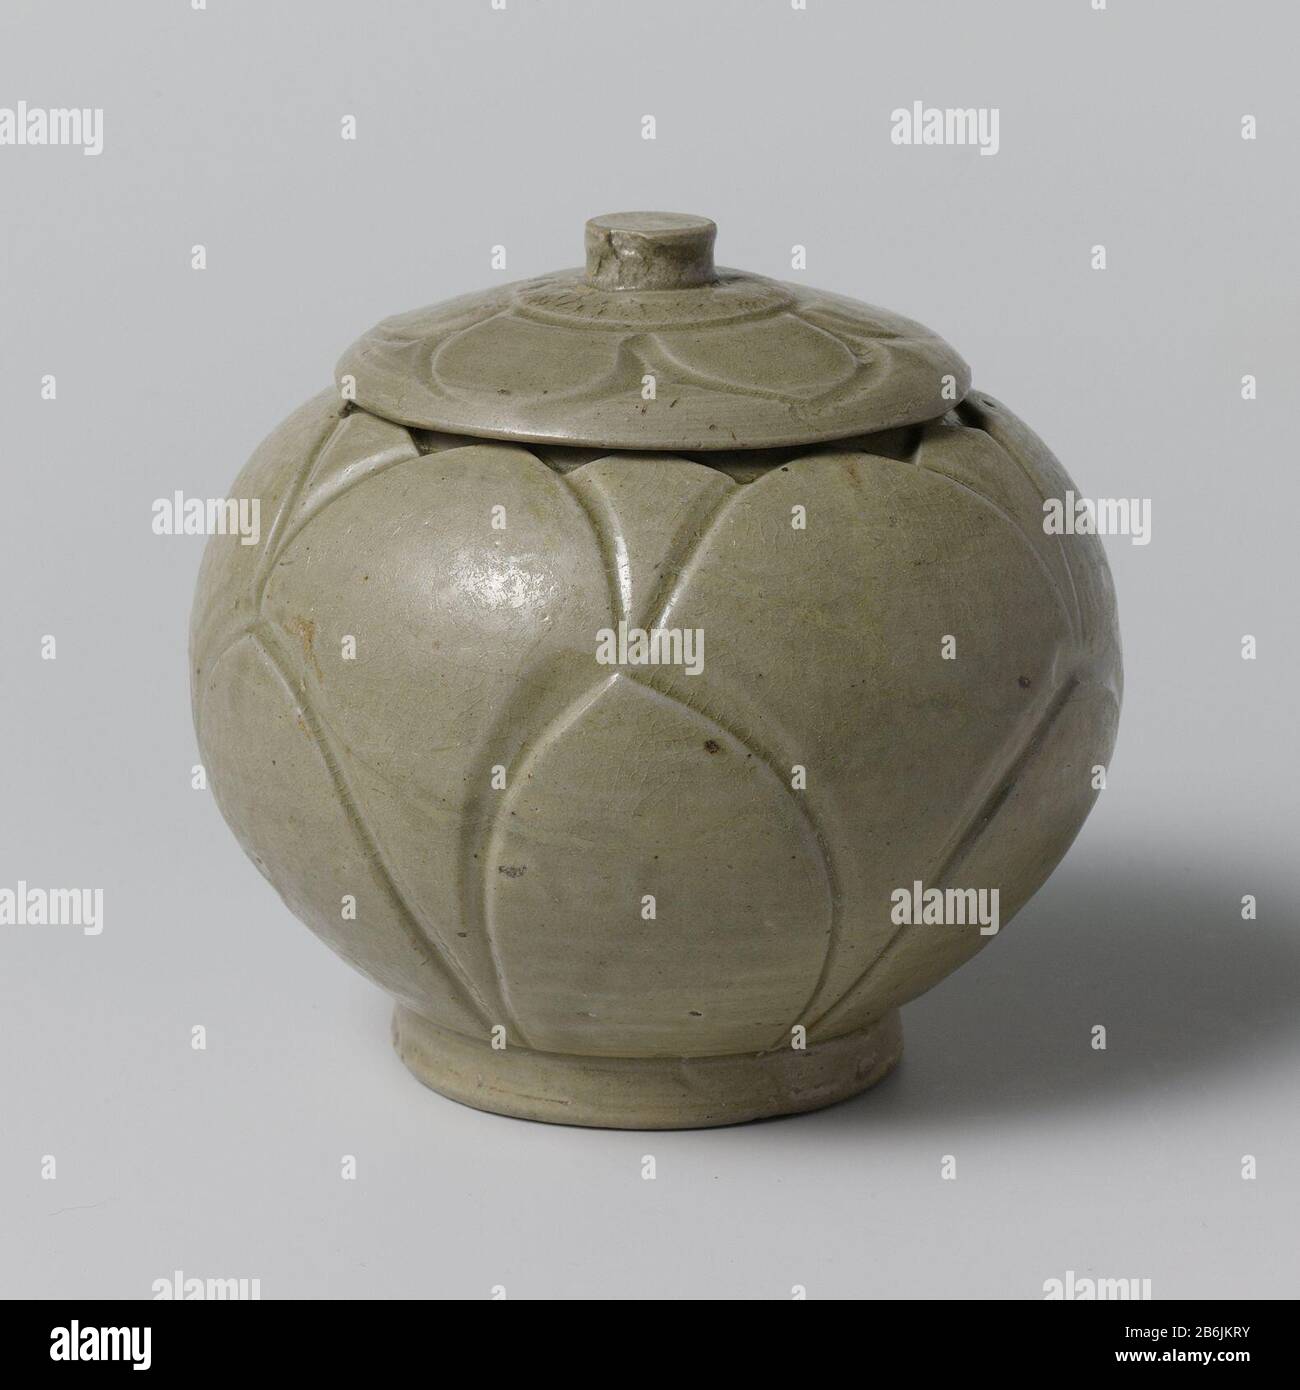 Lidded with incised leaf motifs Dekselpot van steengoed met een bolvormig lichaam, bedekt met een groen glazuur. Op de wand van de pot twee rijen met ingegrifte bloembladmotieven. Op de deksel een band met ingegrifte bladmotieven. Celadon (Yue). Manufacturer : pottenbakker: anoniemPlaats manufacture: China Dating: ca. 900 - ca. 999School / stijl: Song-dynastie (960-1279) Physical kenmerken: steengoed met een groen glazuur Material: steengoed glazuur Techniek: draaiend bewerken / bakken / graveren (inkerven) / glazuren Dimensions: buik: d 12 cm Stock Photo